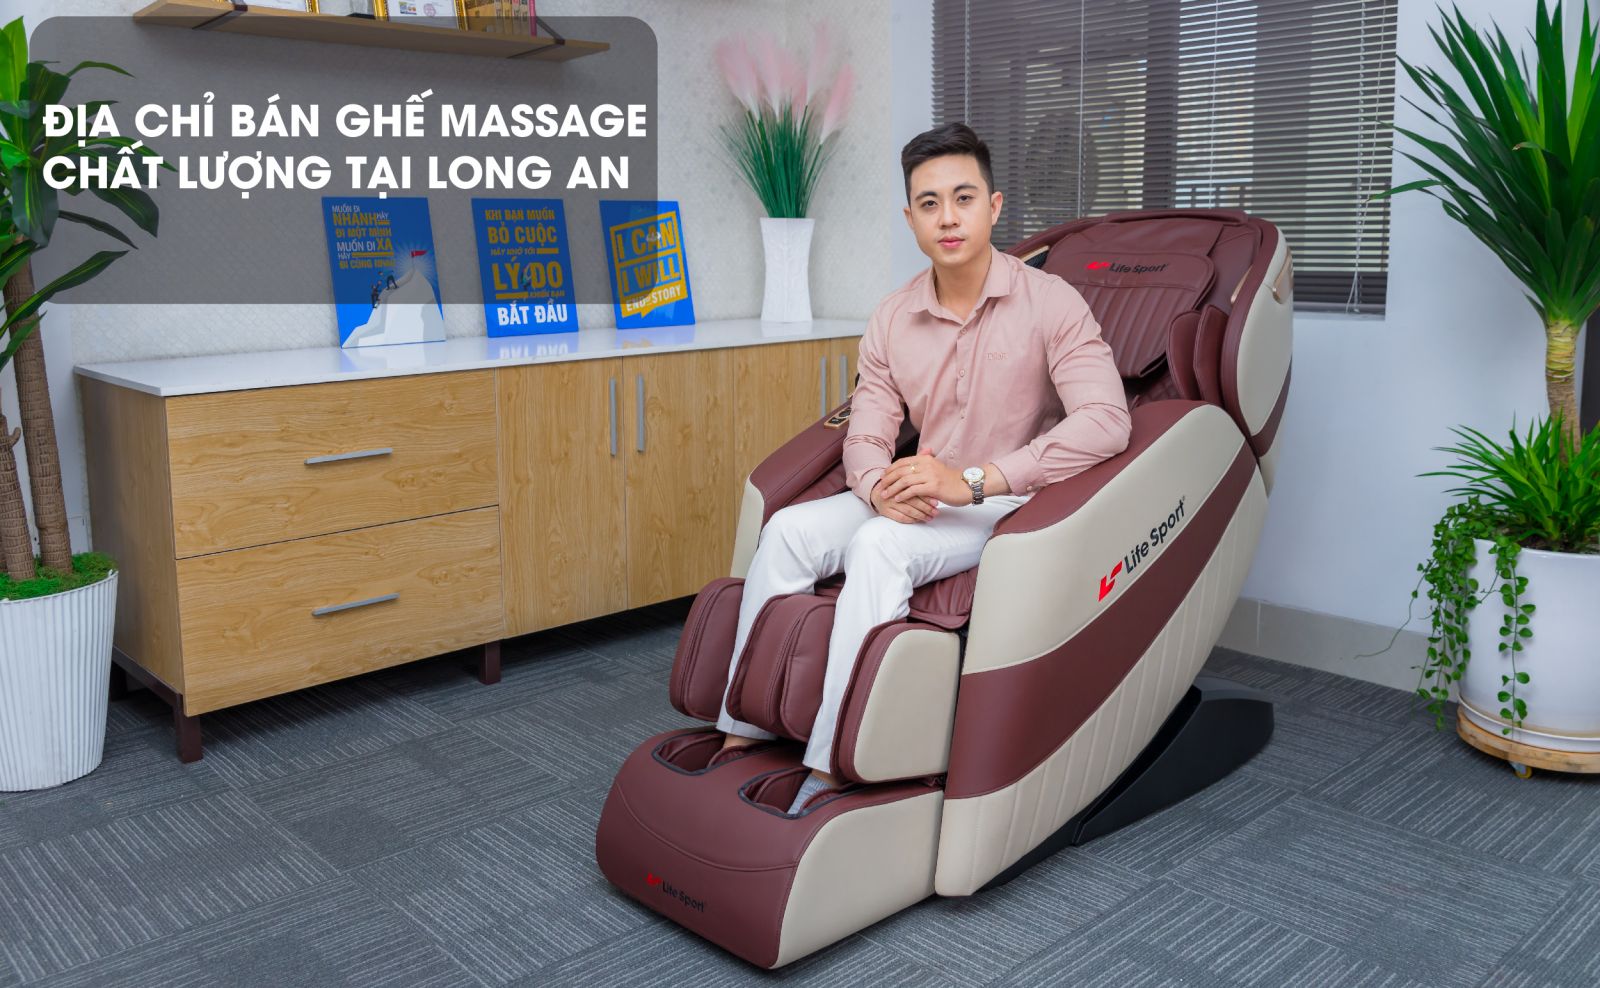 top3 chiec ghe massage duoc yeu thich tai long an 2